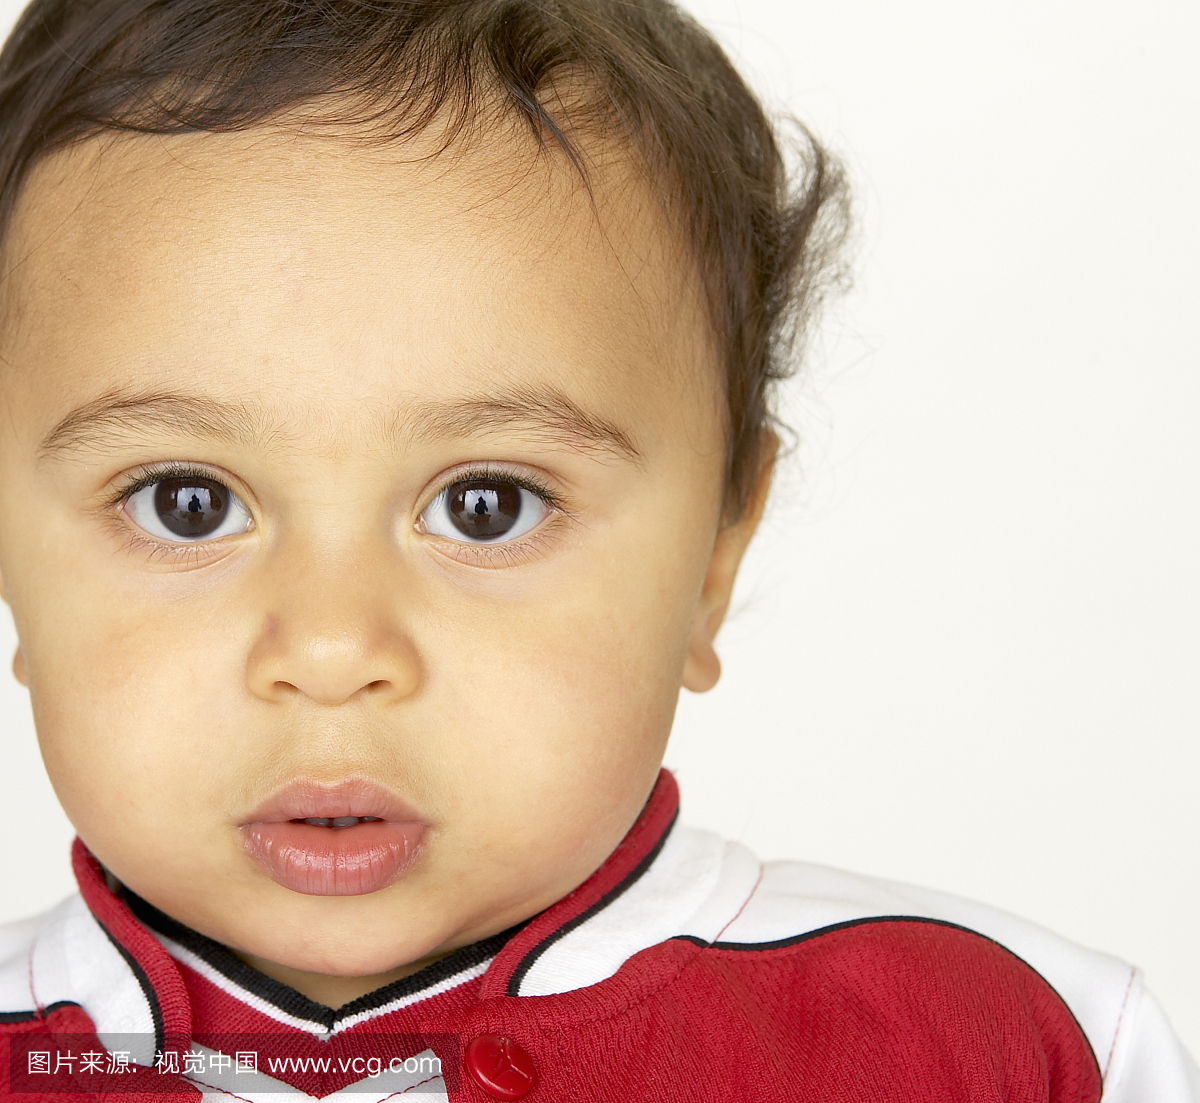 男婴(12-15个月)在红色运动衫,肖像,关闭